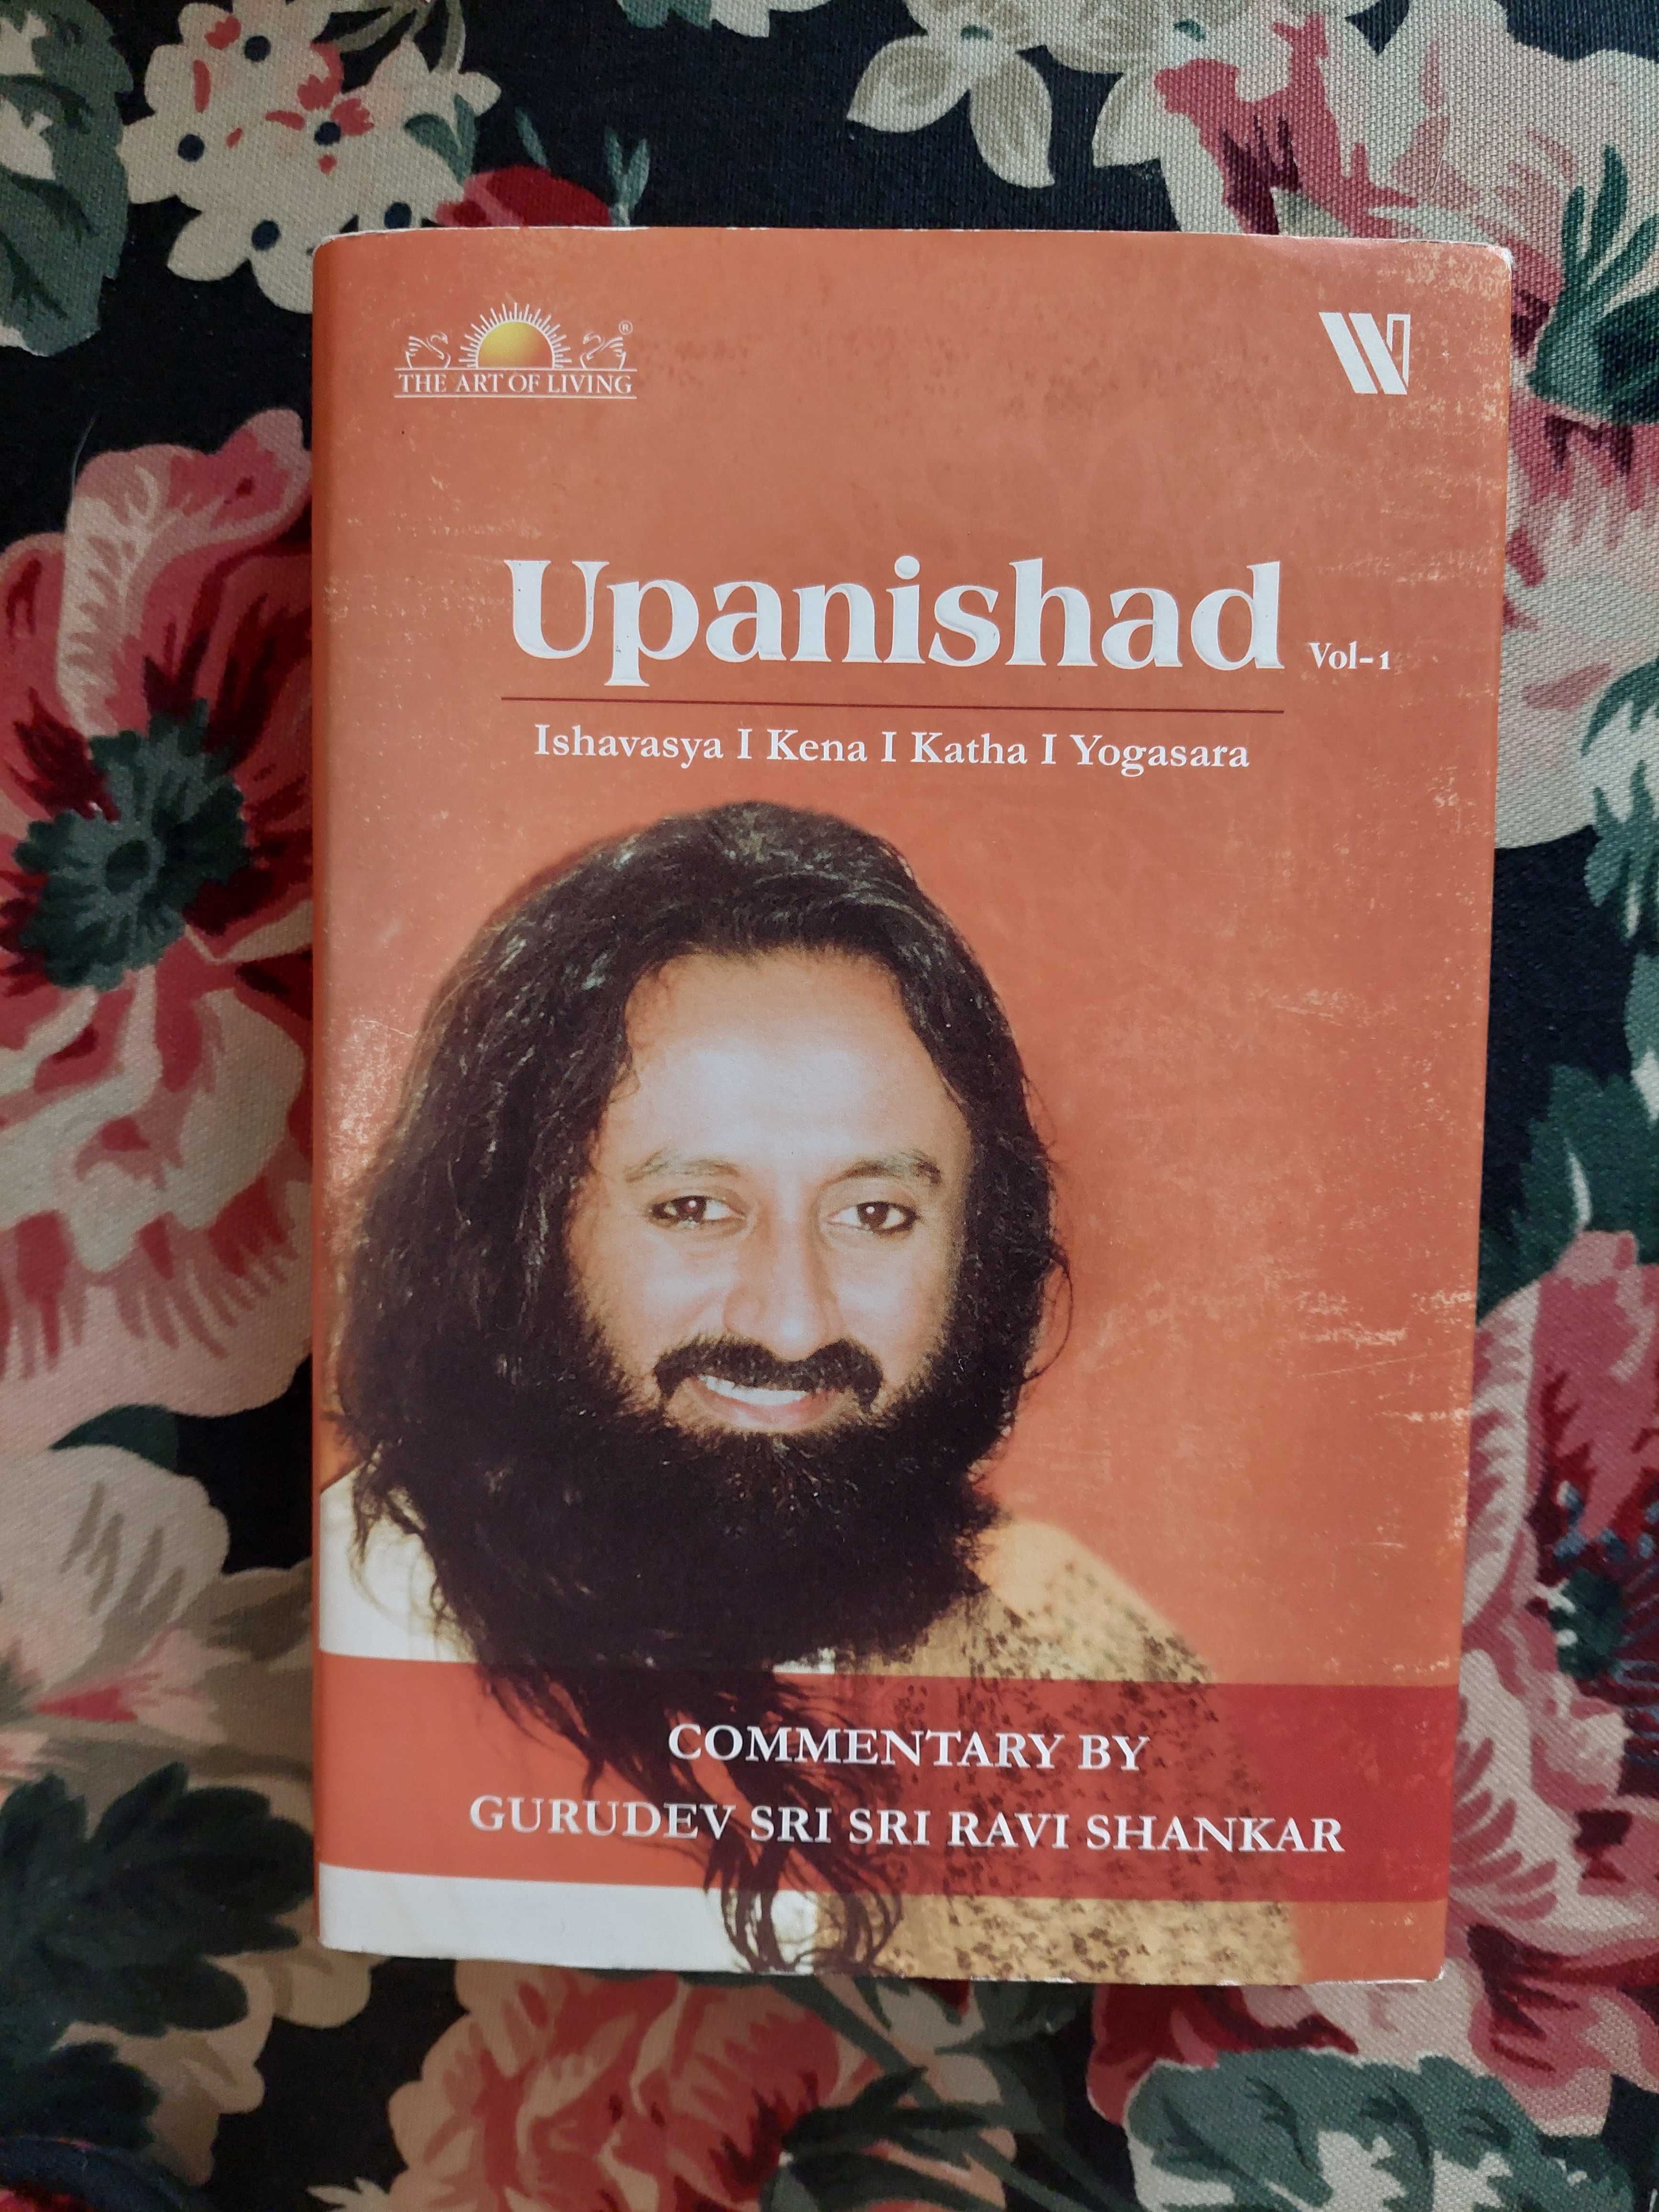 książka "Upanishad-Ishavasya Kena Katha Yogasara" Sri Sri Ravi Shankar